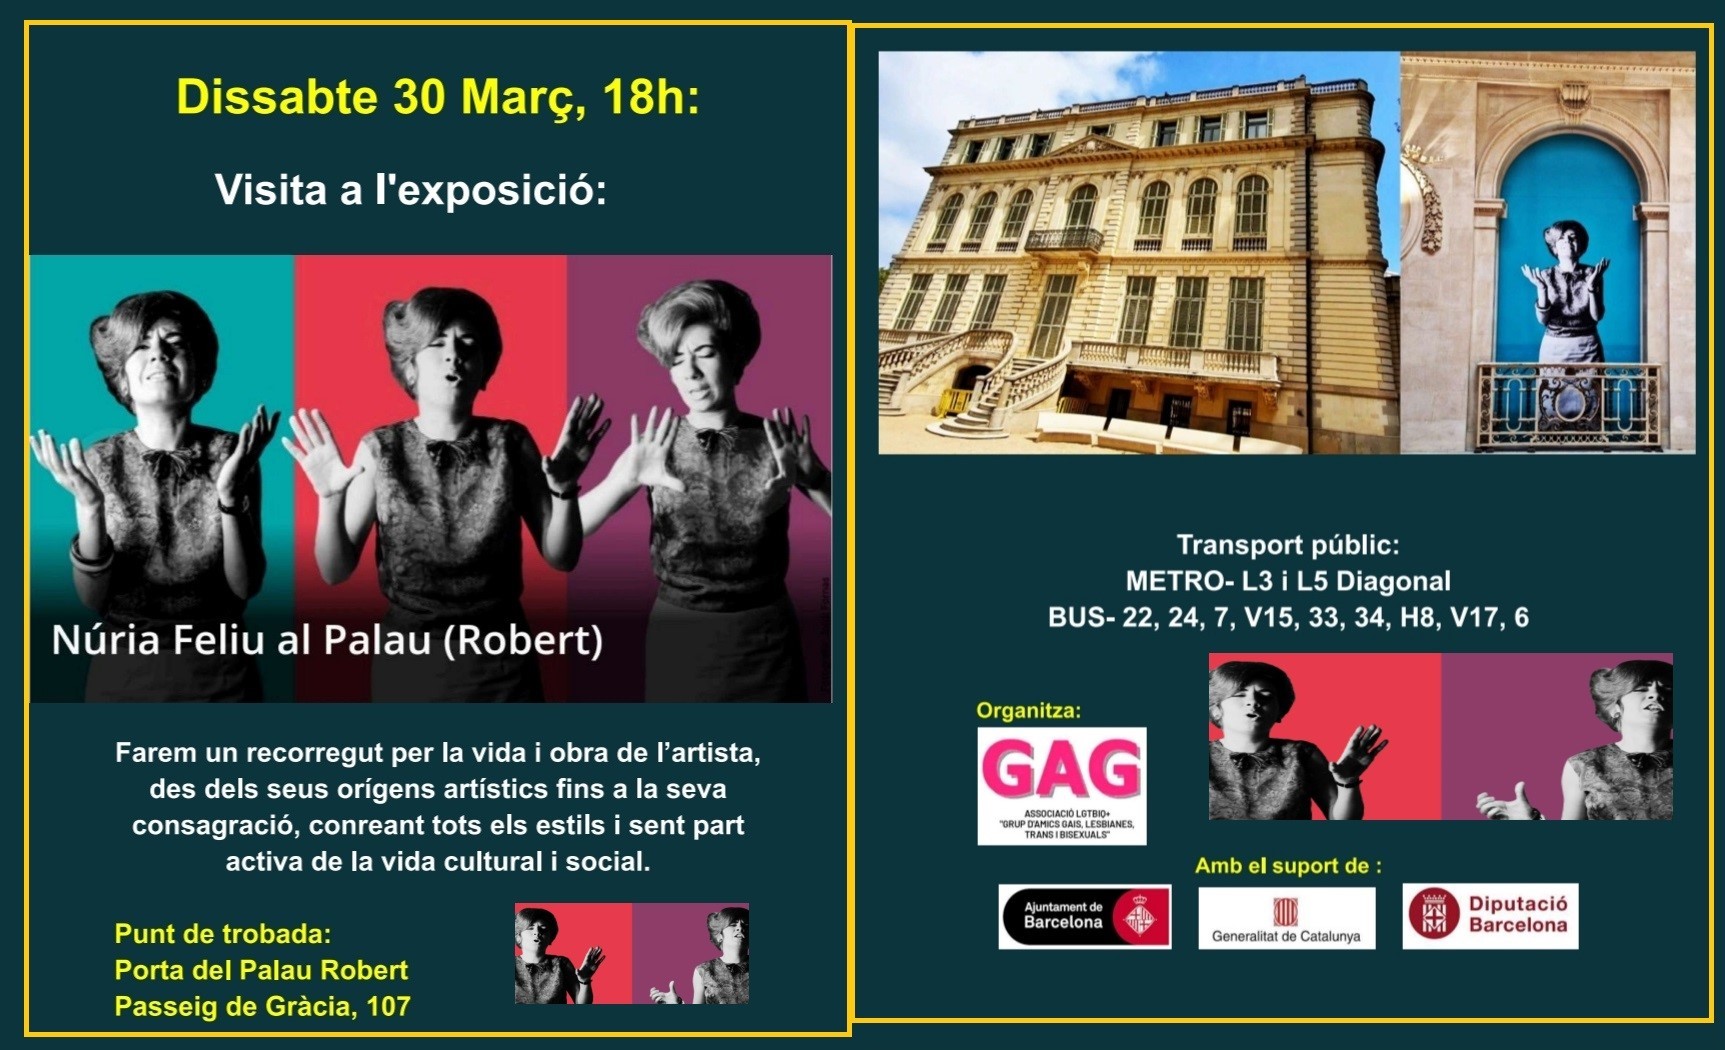 Dissabte 30 Març, 18h: Visita a l’exposició: Nuria Feliu al Palau Robert